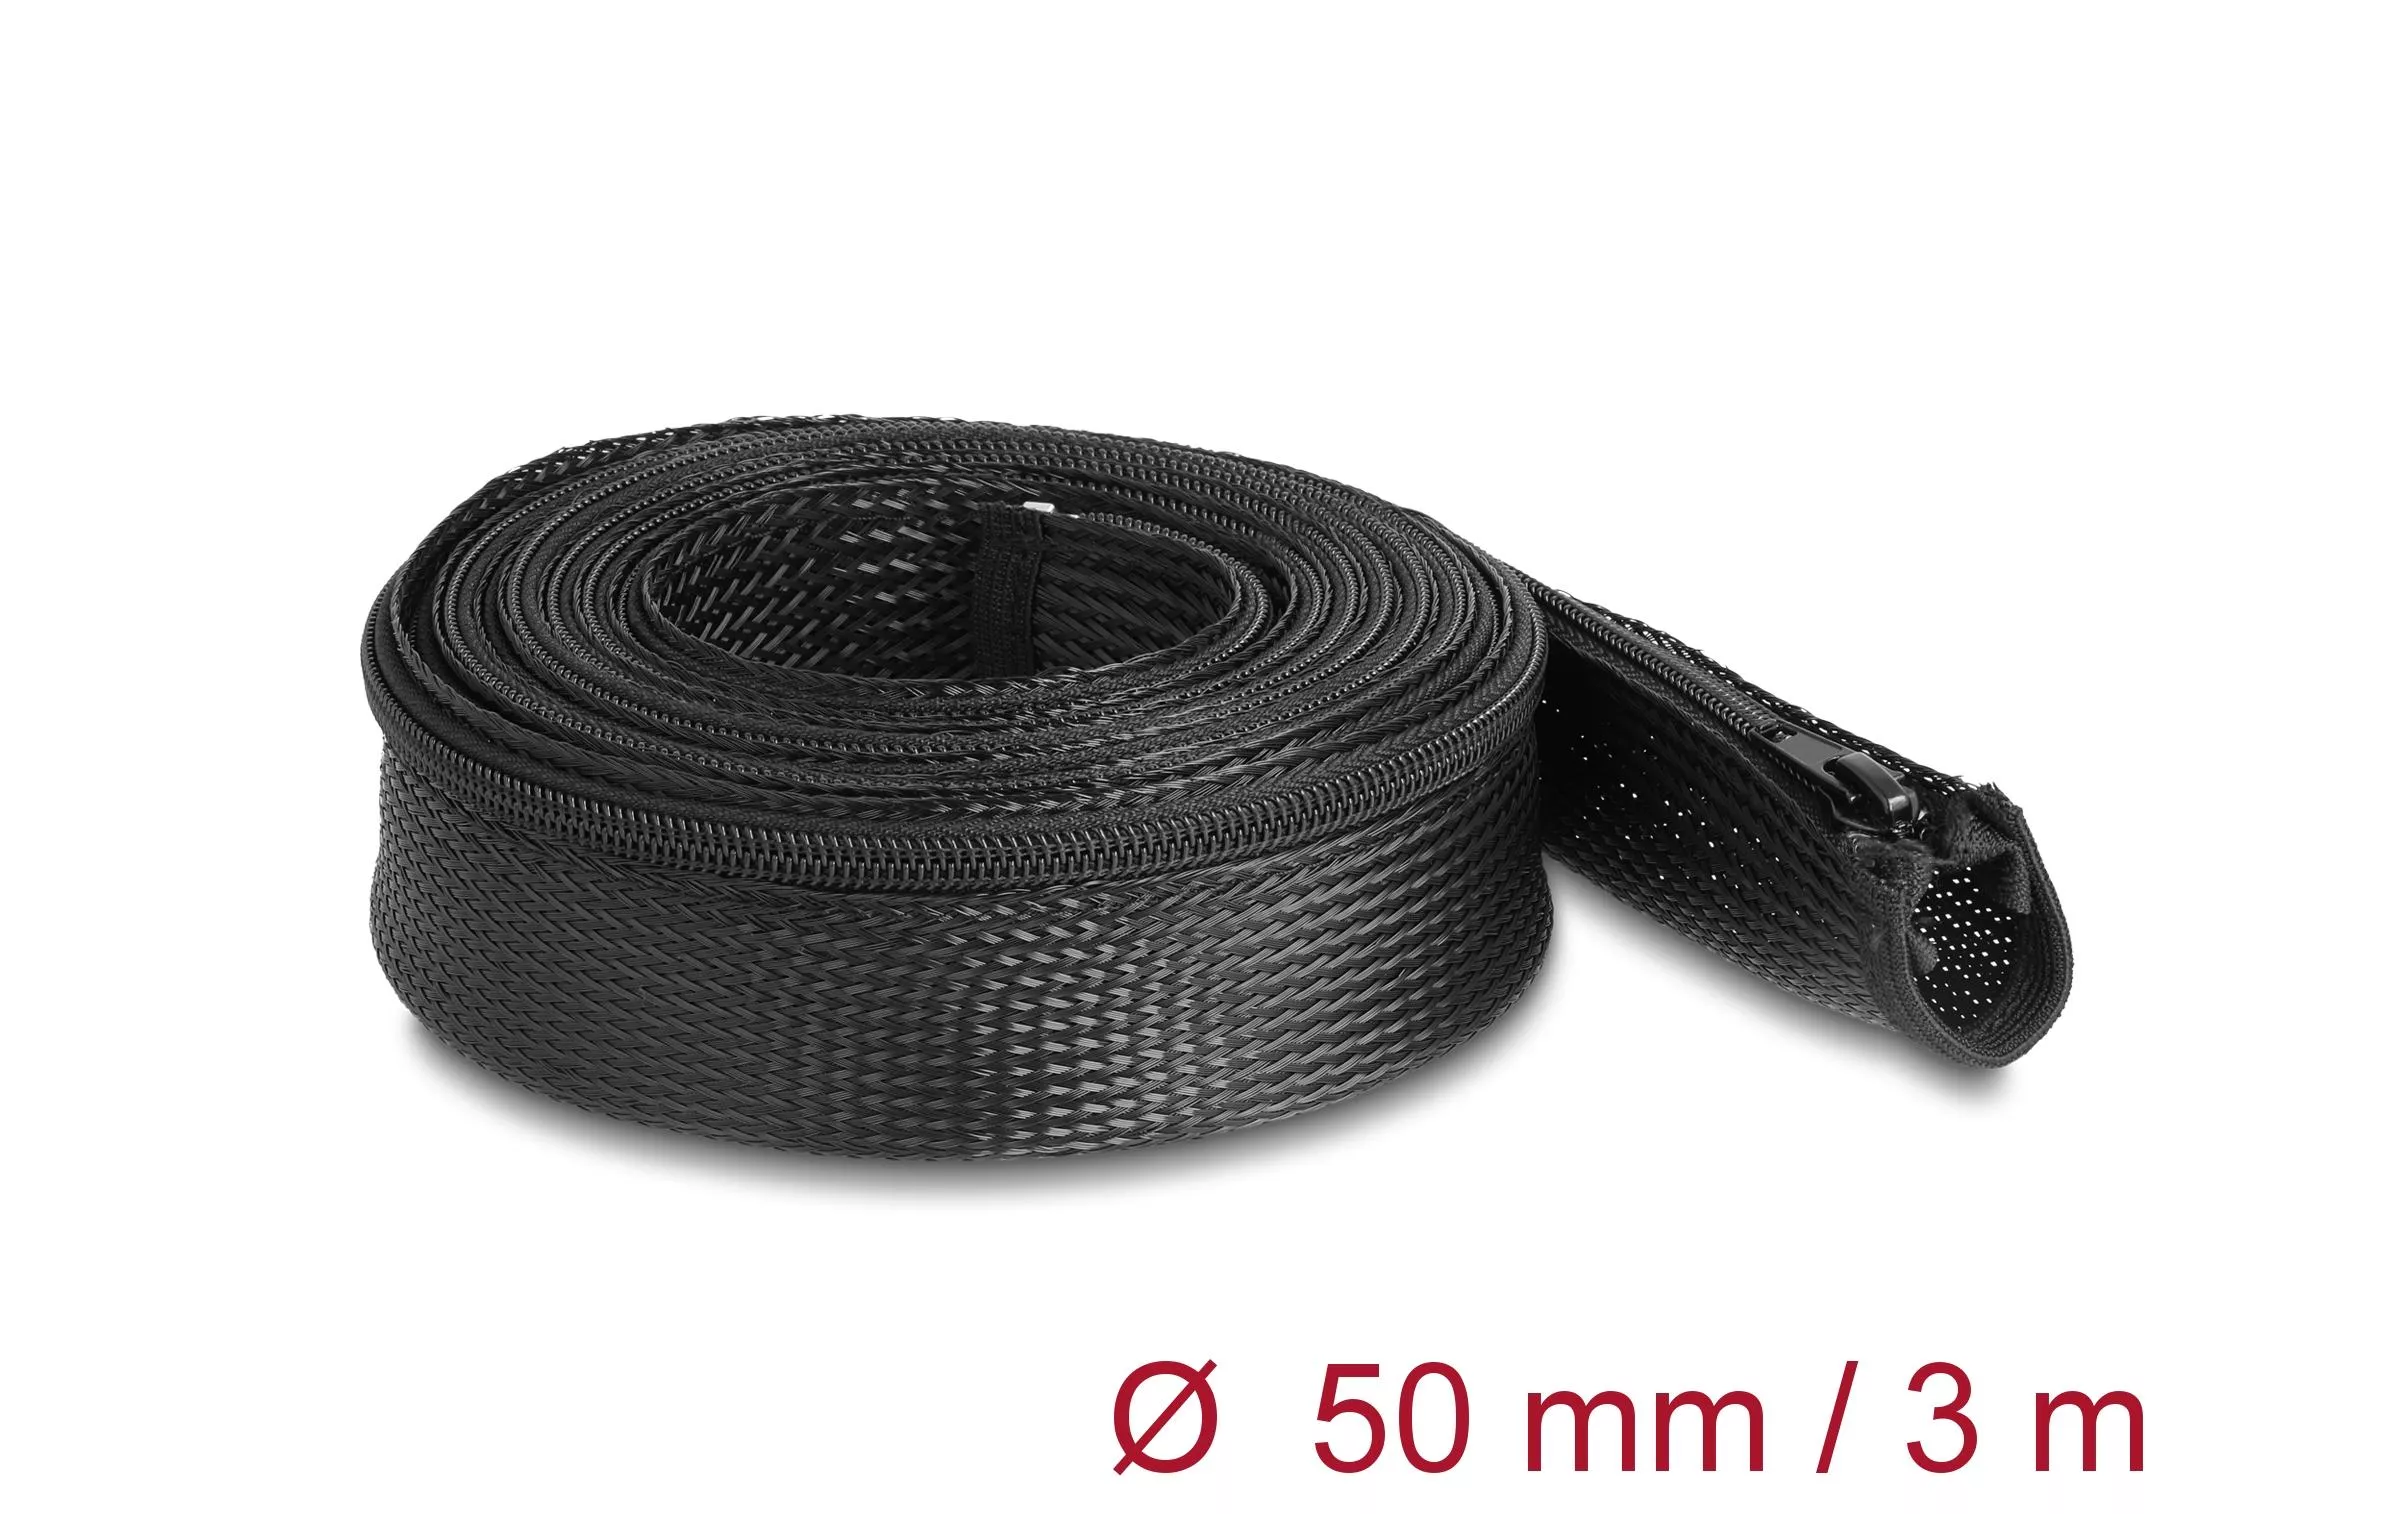 Kabelschlauch 3 m x 50 mm, mit Reissverschluss, Schwarz - Haustechnik